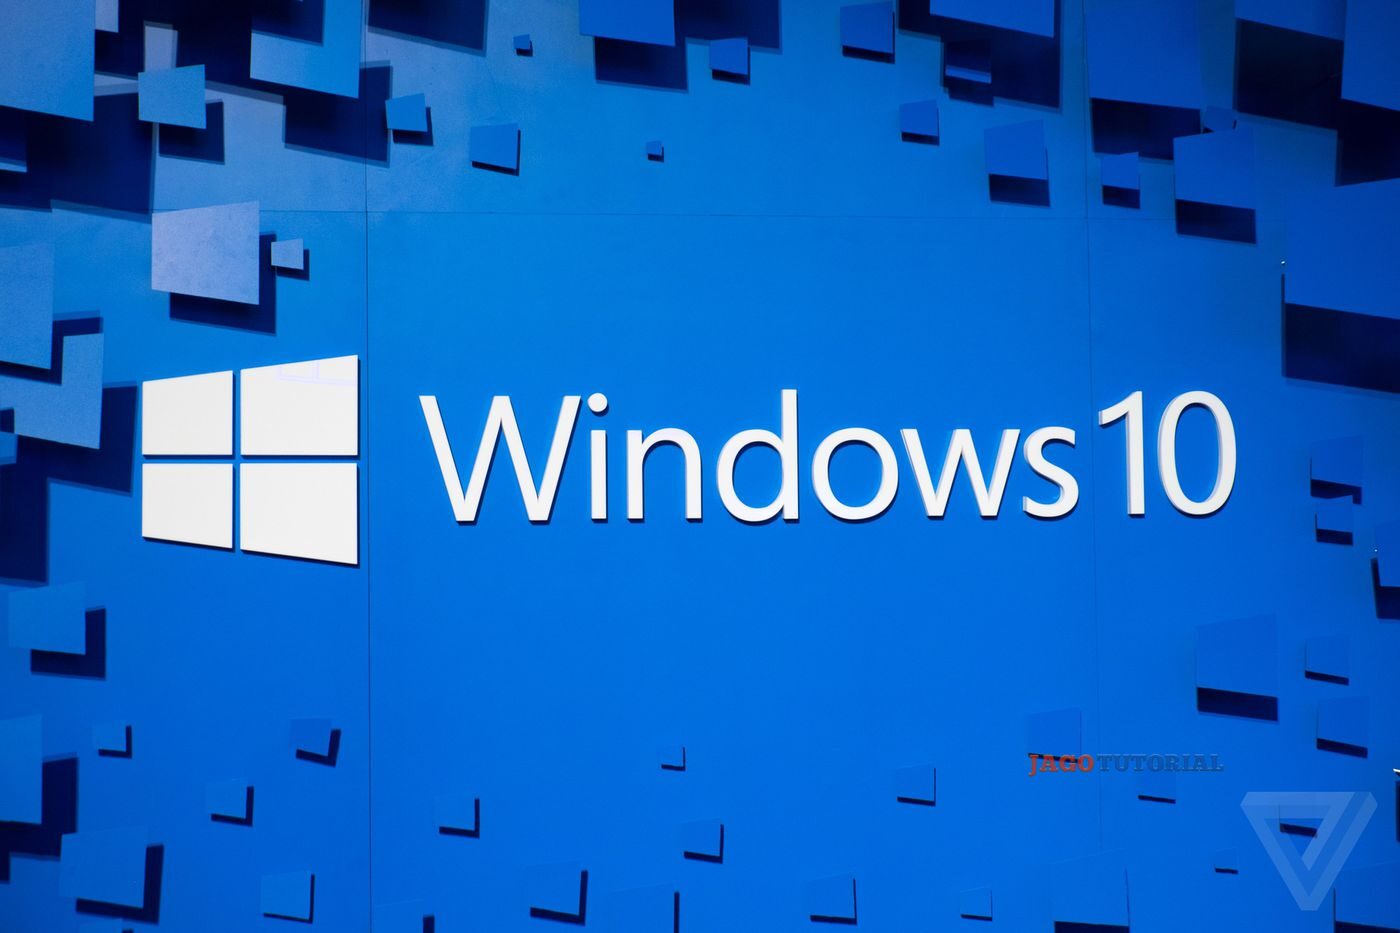 Cara Install Ulang Windows 10 Dengan Mudah